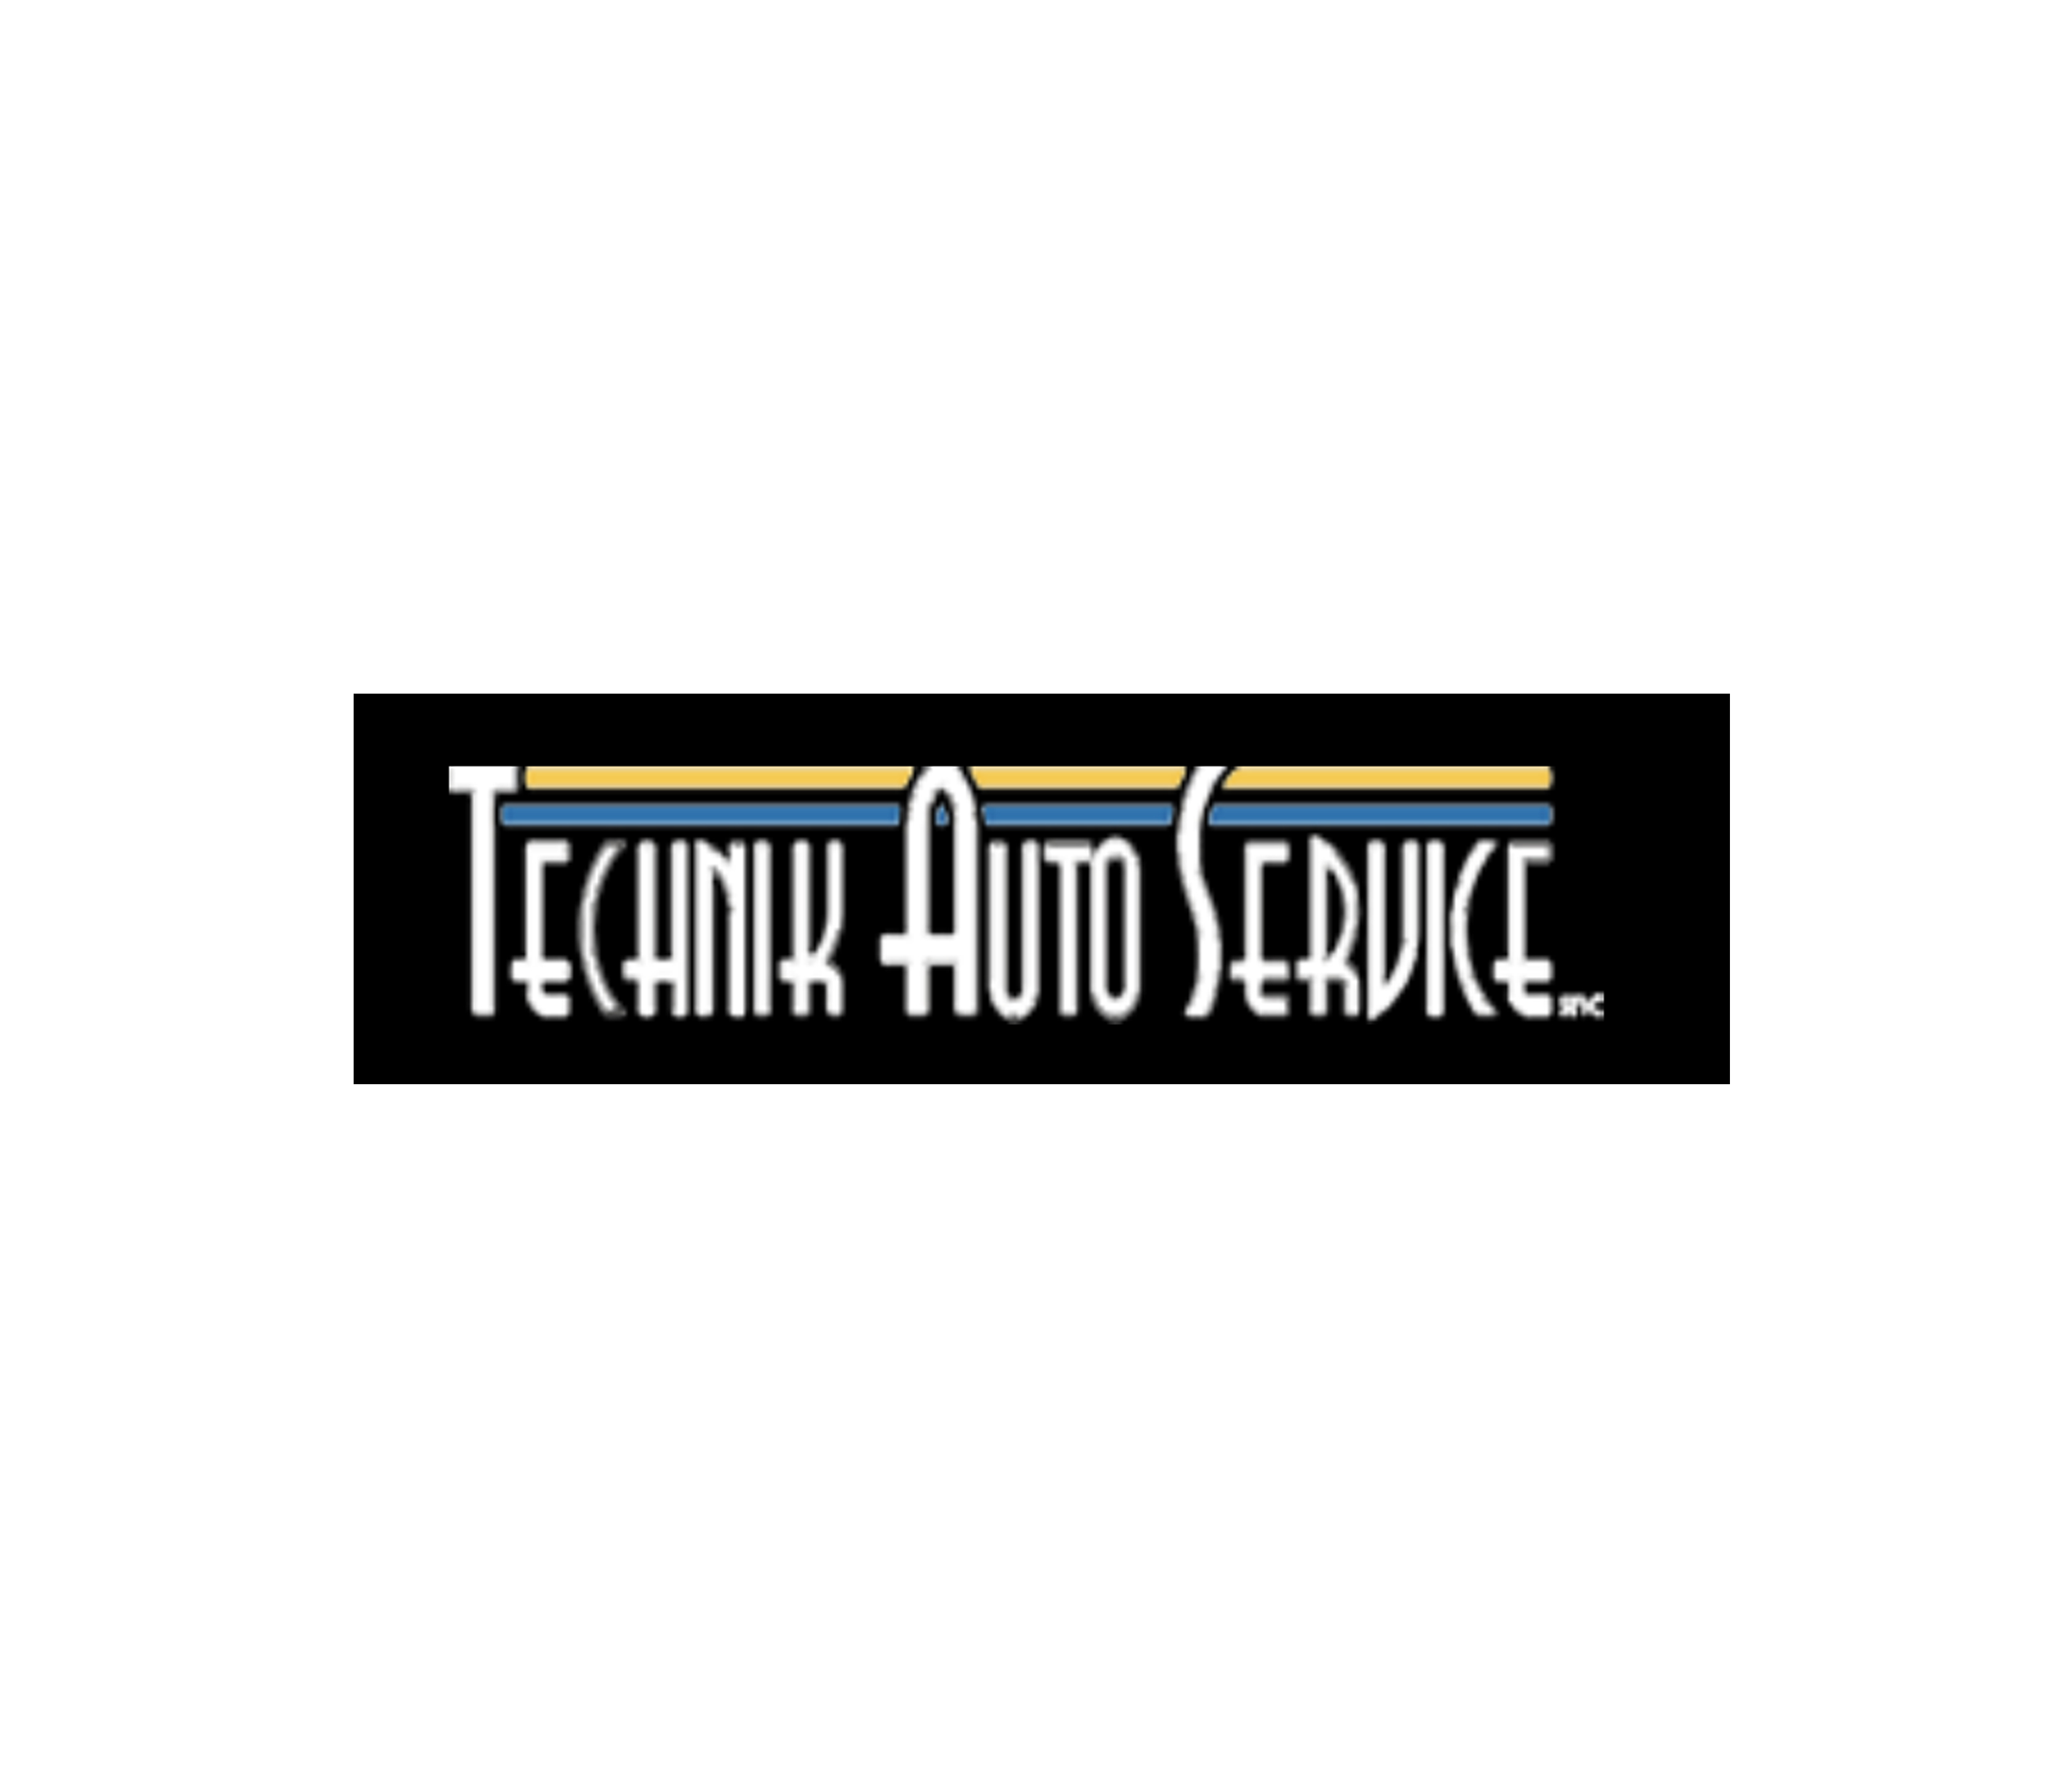 Technik Auto Service - Officina Elettrauto